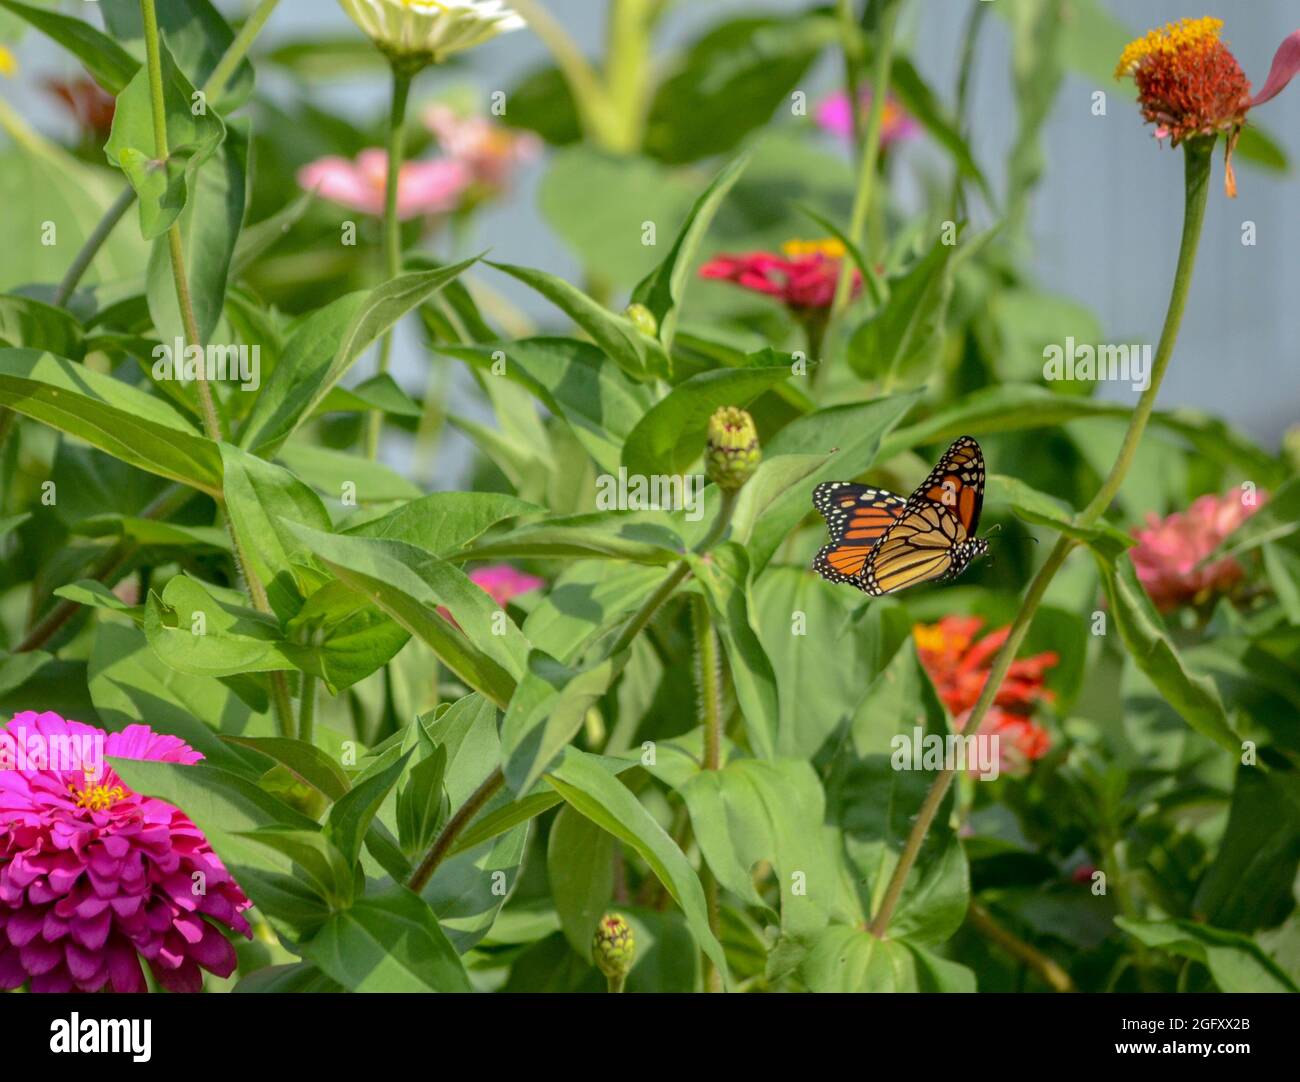 Farfalla monarca in volo Foto Stock